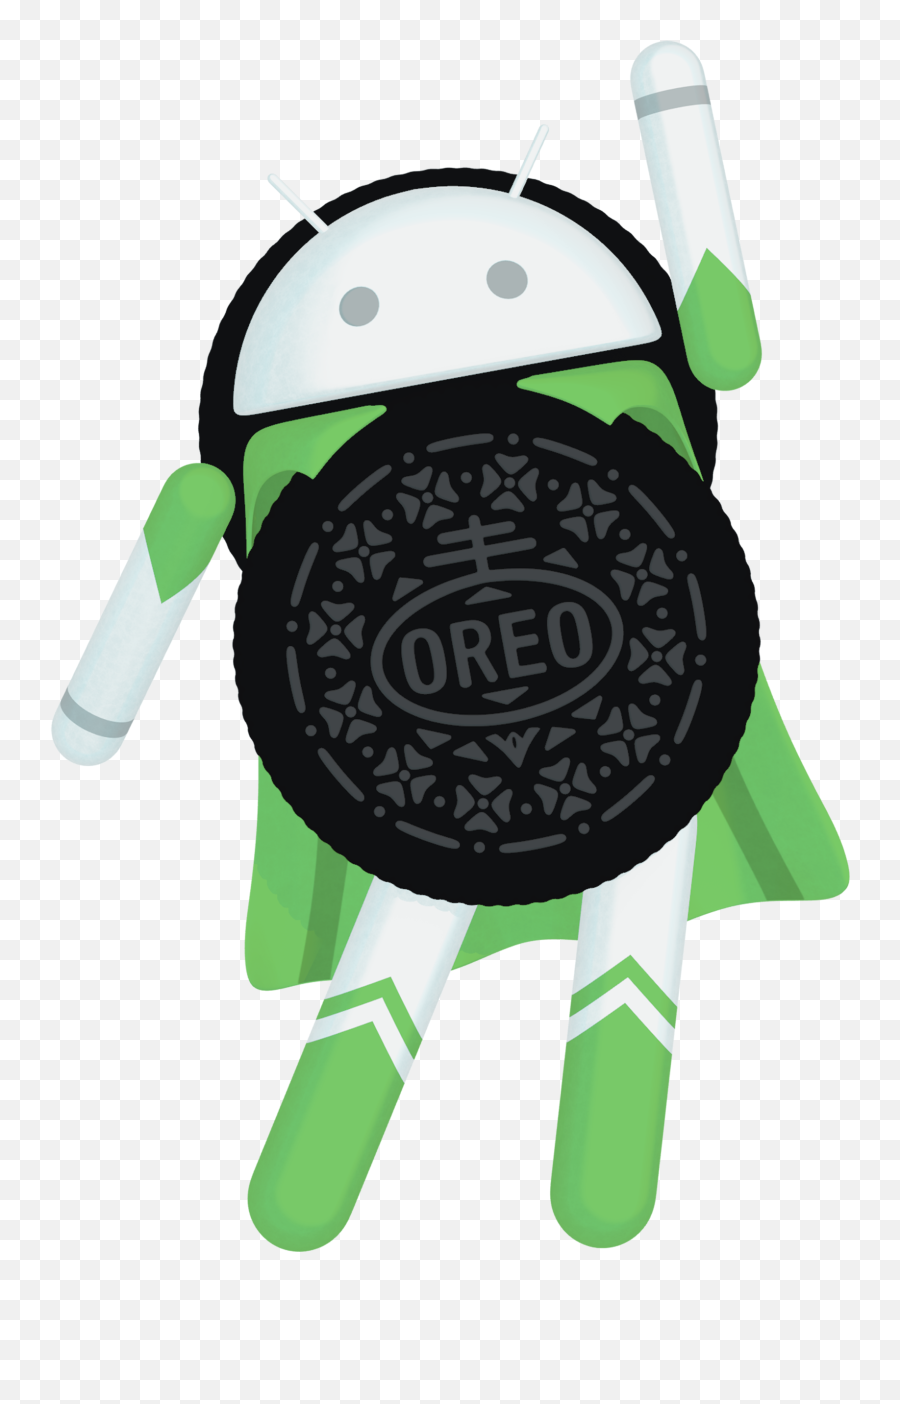 Android Oreo Logos - Android Oreo Logo Png,Android Logos